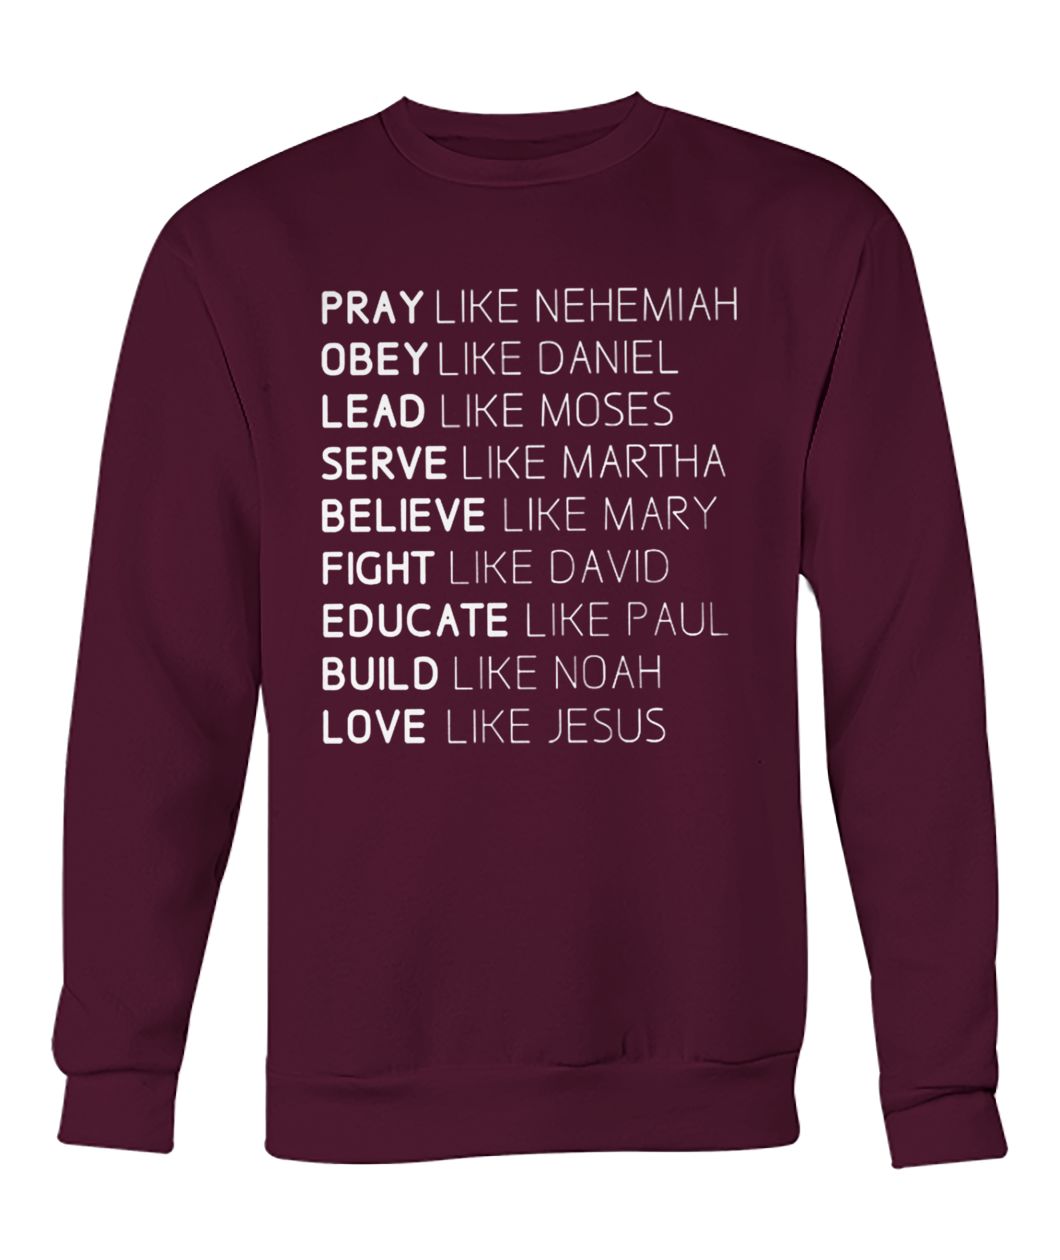 Pray like nehemiah obey like daniel lead like moses serve like martha love like mary crew neck sweatshirt